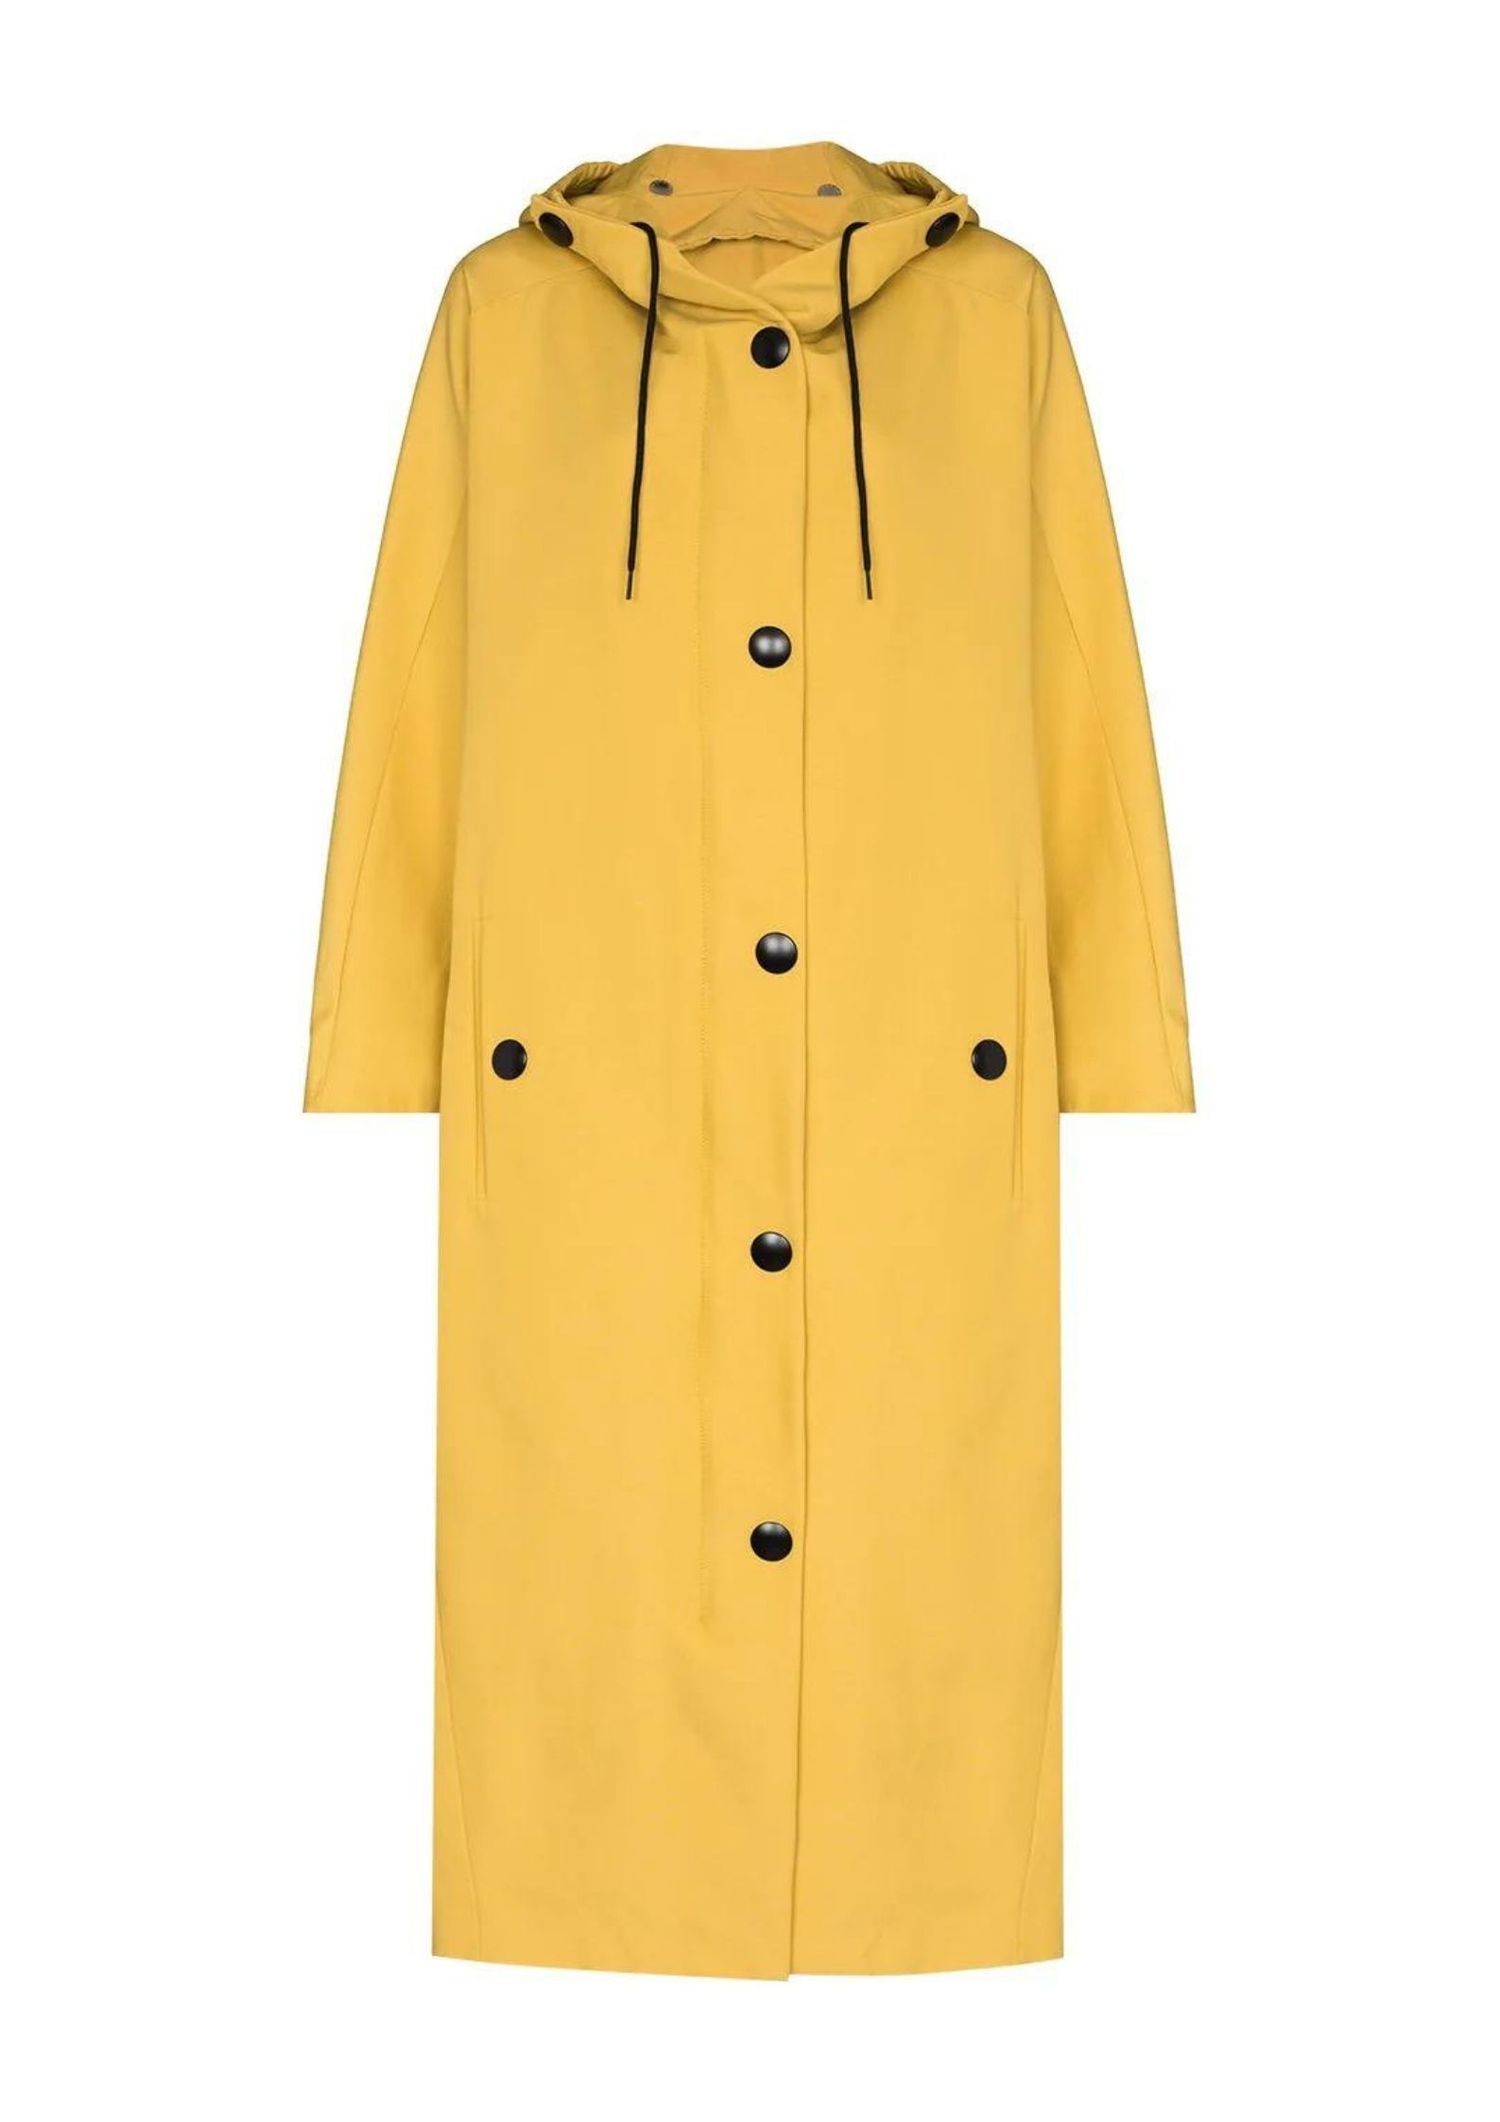 Adults Men Raincoat Waterproof Hooded Rain Jacket Long Coat Outdoor Work Wet Top 